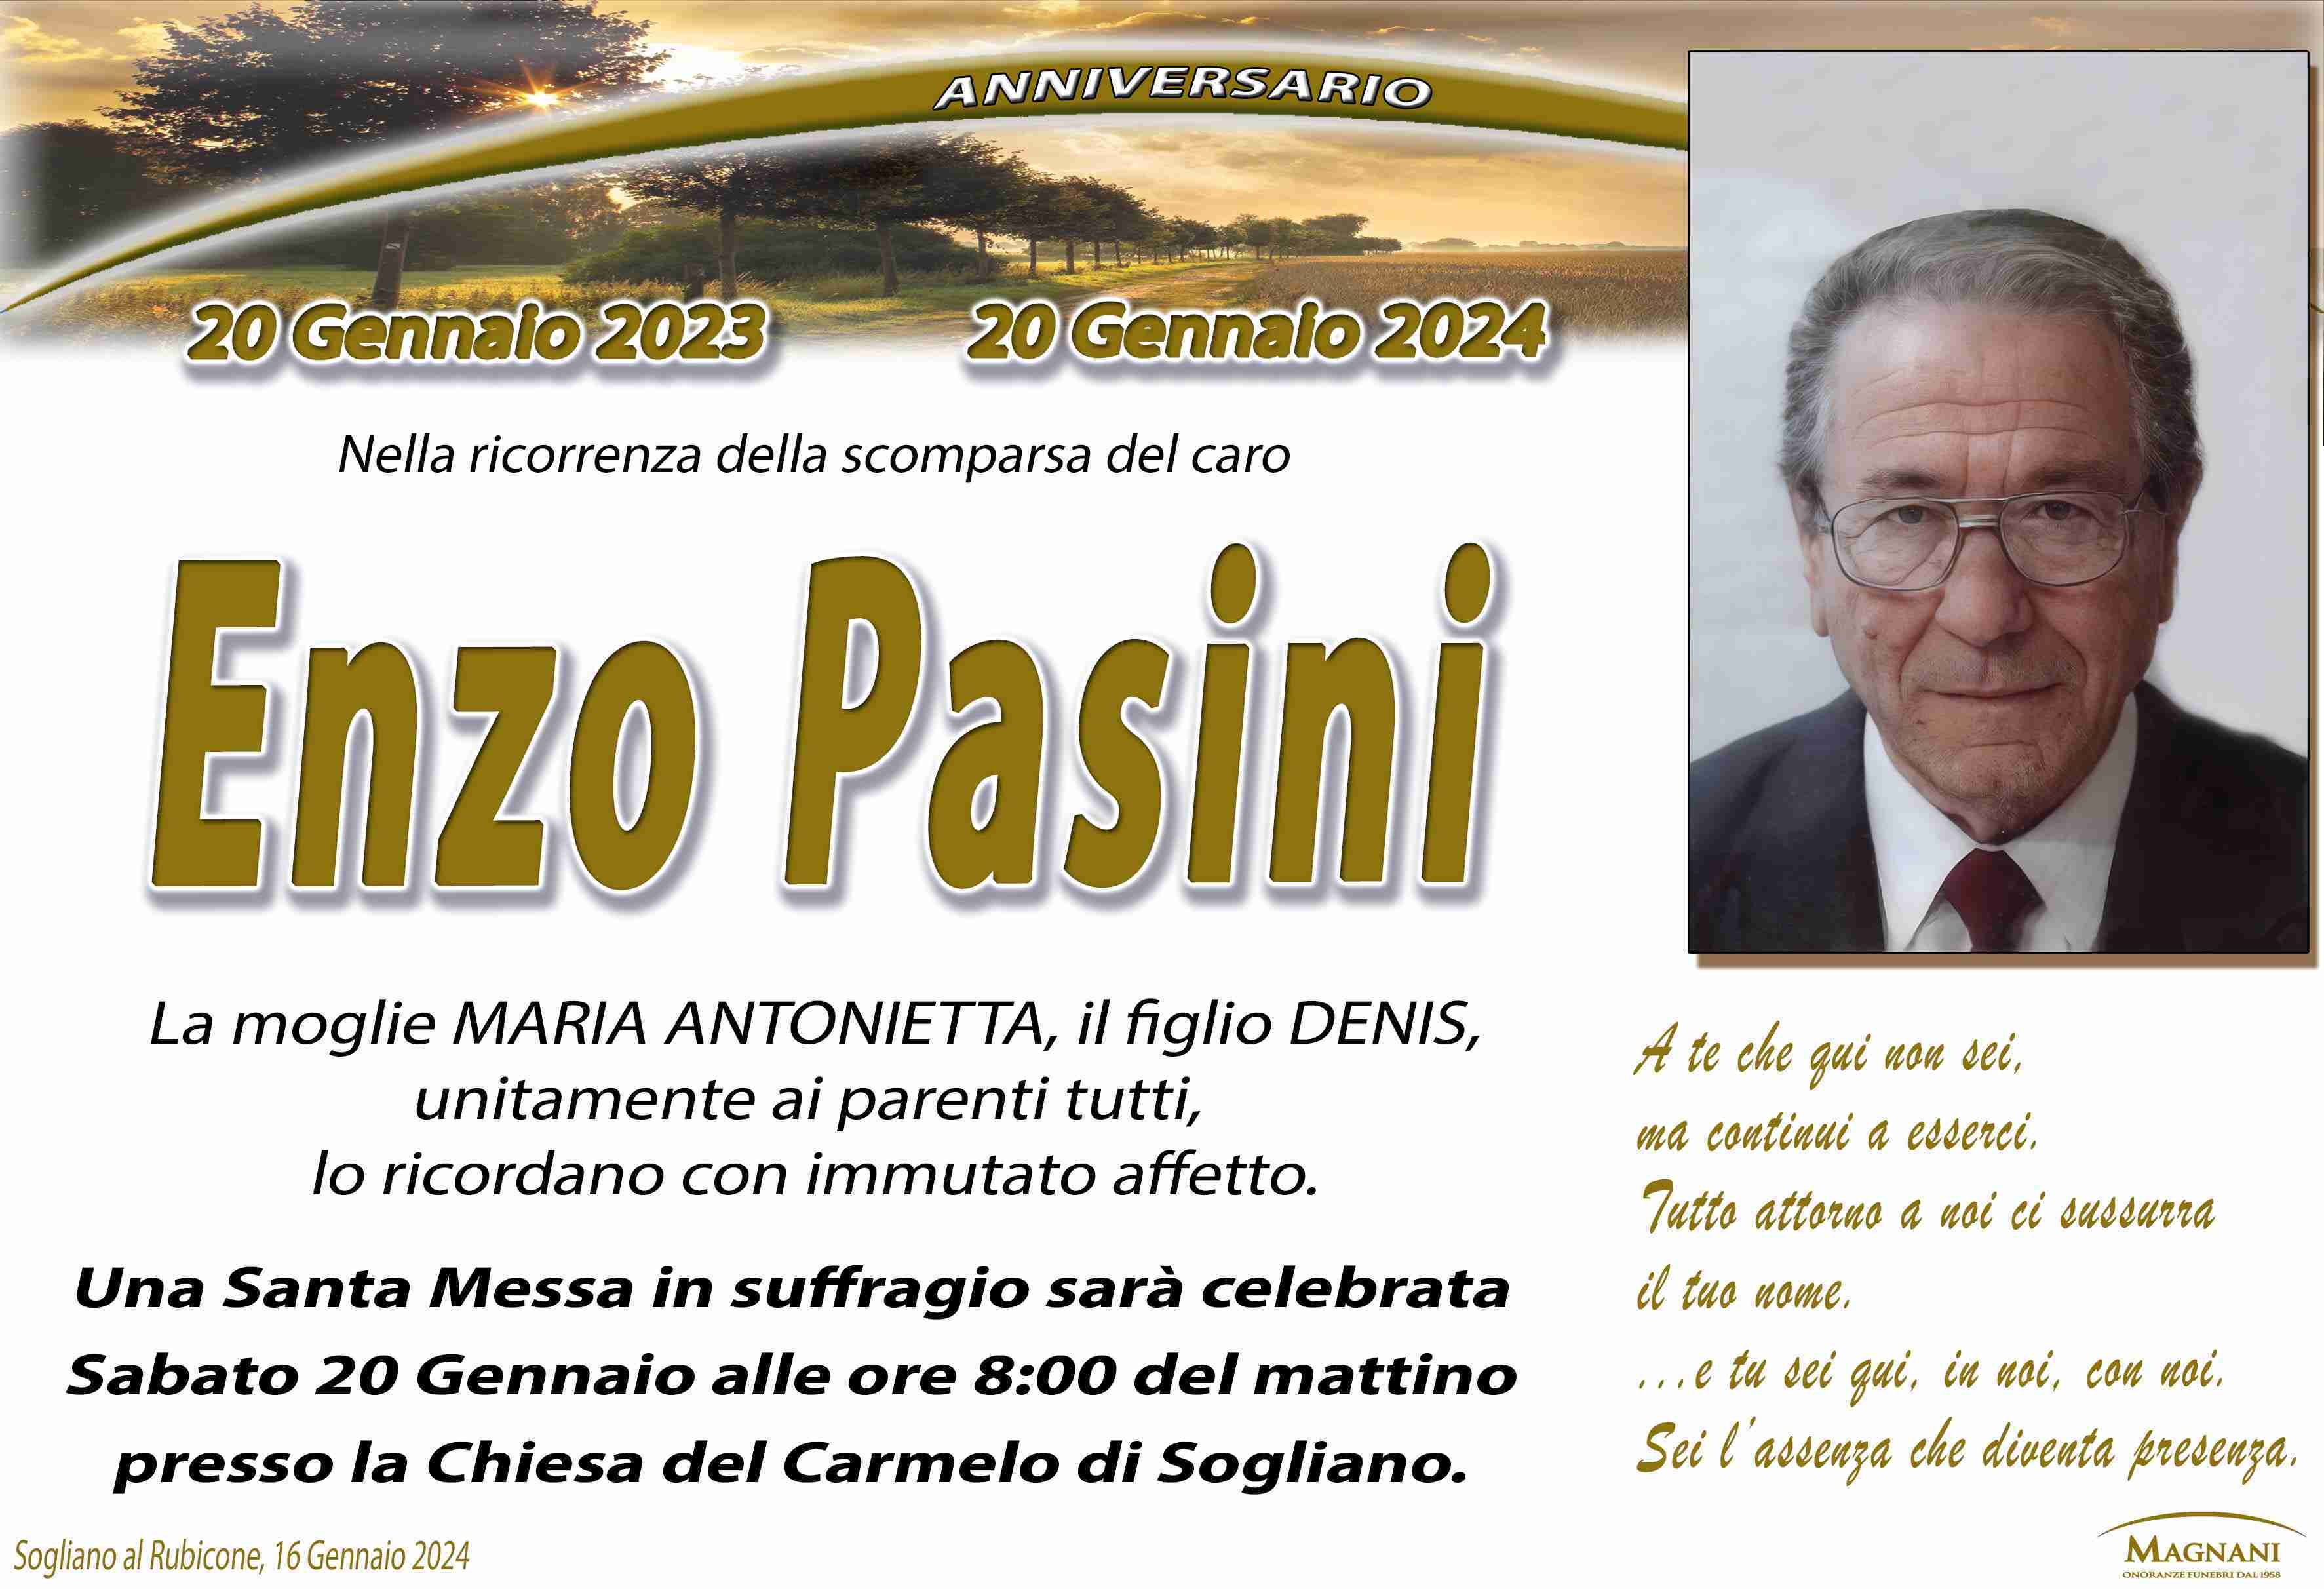 Enzo Pasini